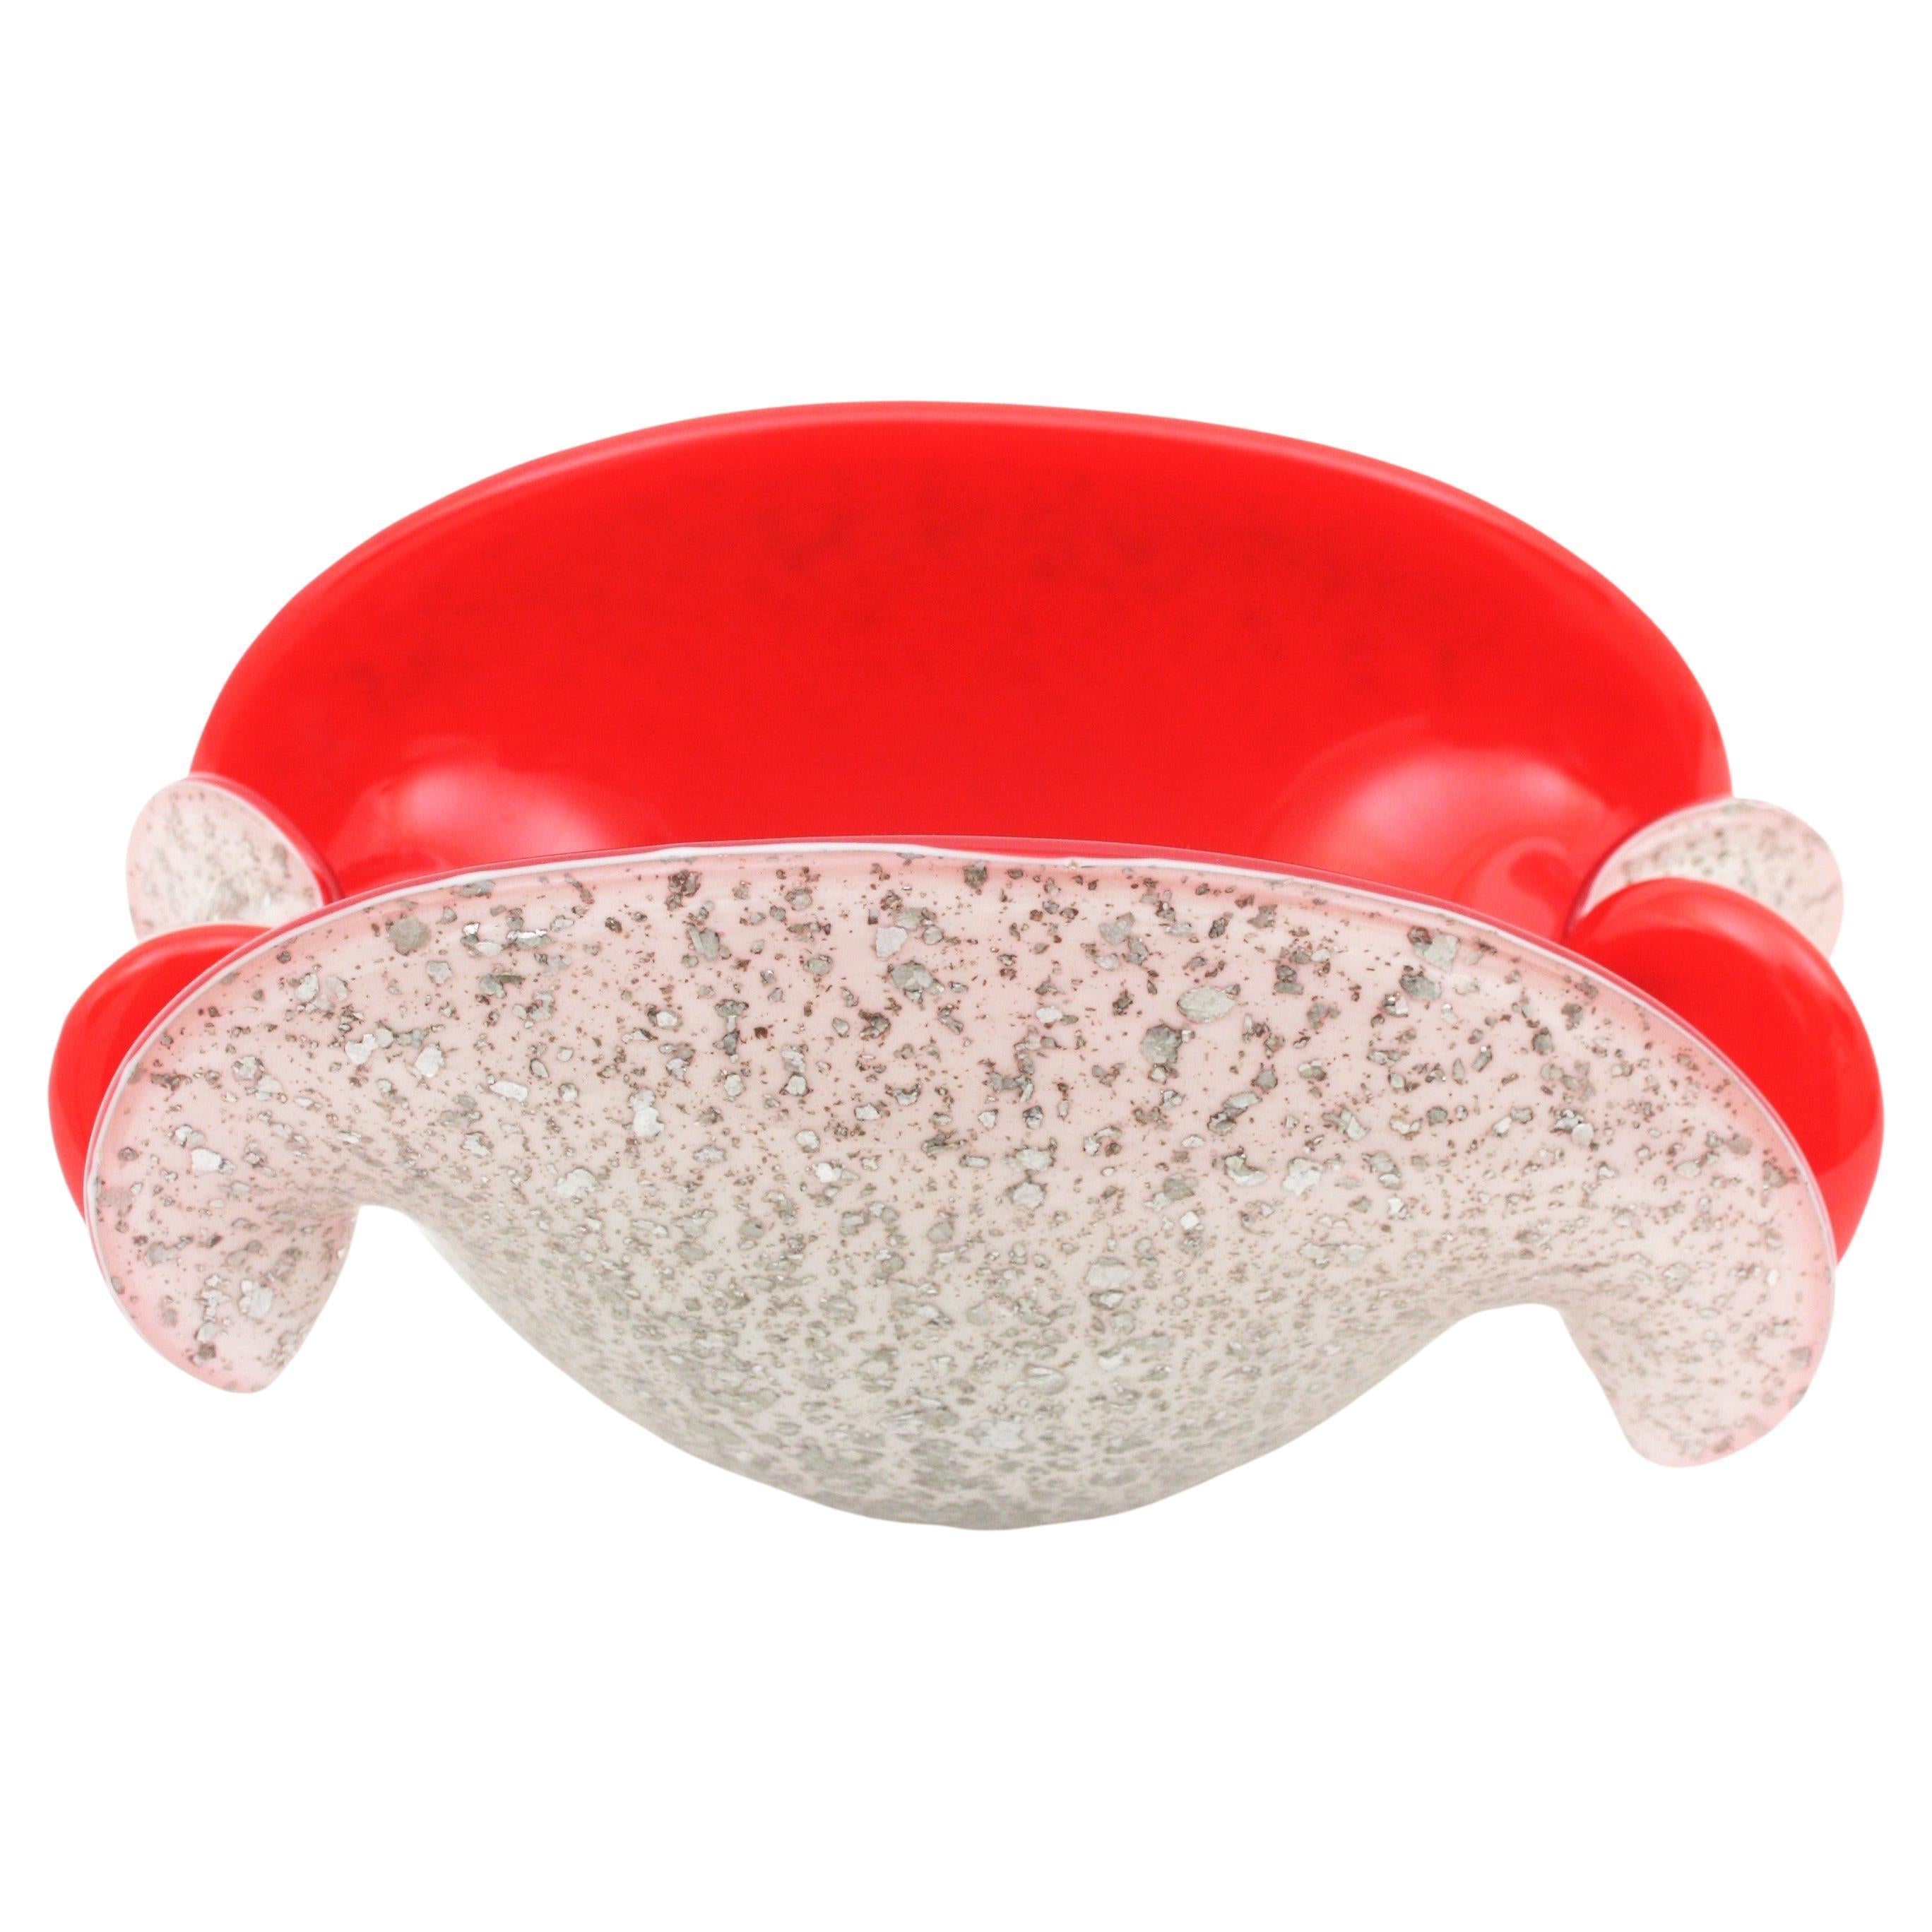 Monumentale mundgeblasene Murano Kunstglas Muschelschale / Aschenbecher in rot und weiß mit silbernen Flecken Einschlüsse. Zuschreibung an die Firma Seguso, Italien, 1950er Jahre.
Rotes Glas in weißem Glas eingeschlossen, mit silbernen